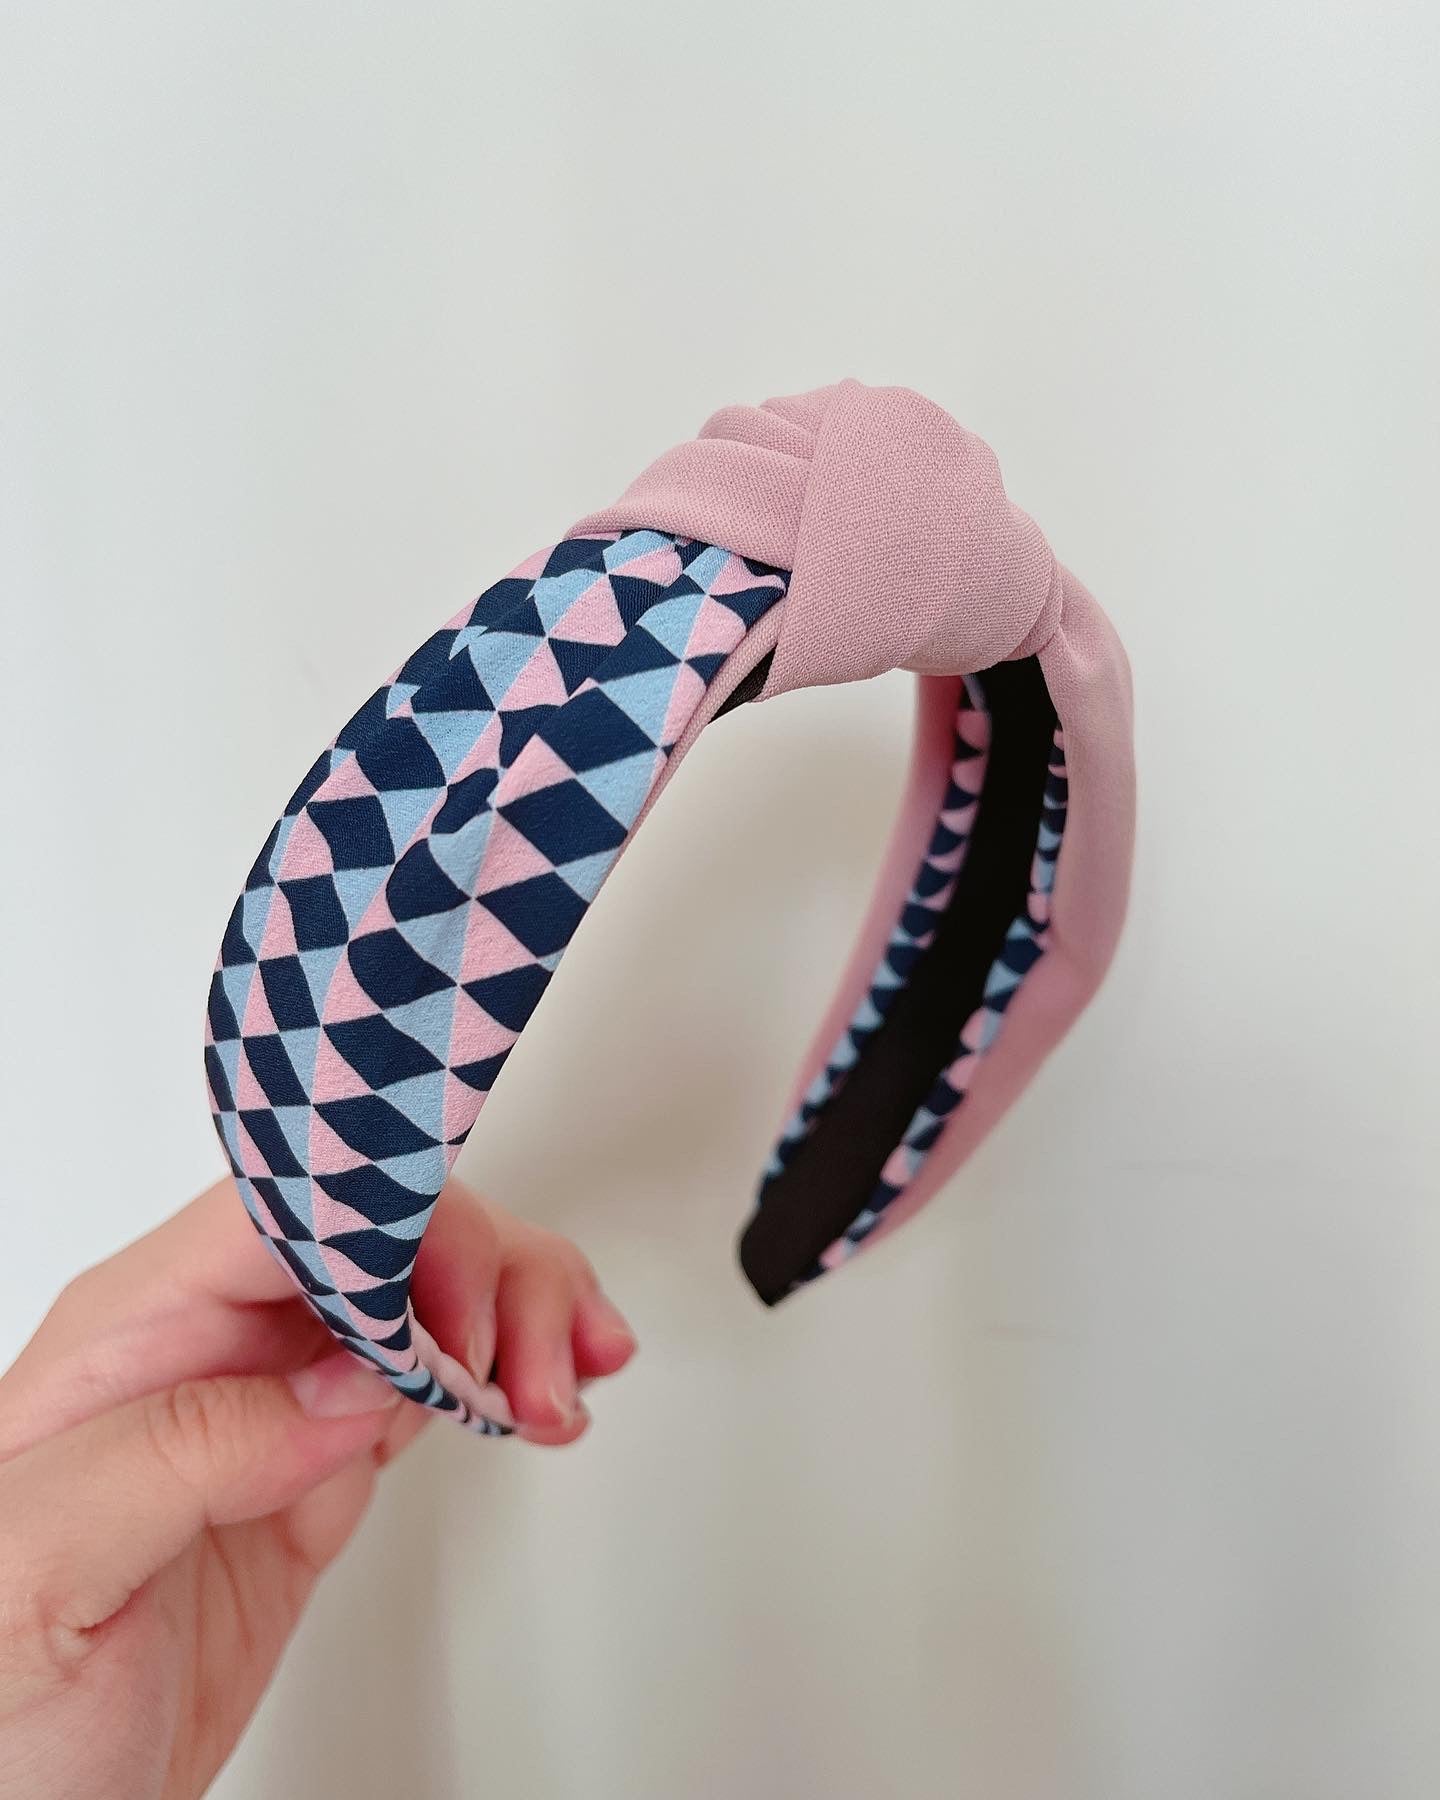 韓式人工髮箍 - 粉紅色配幾何圖案髮箍